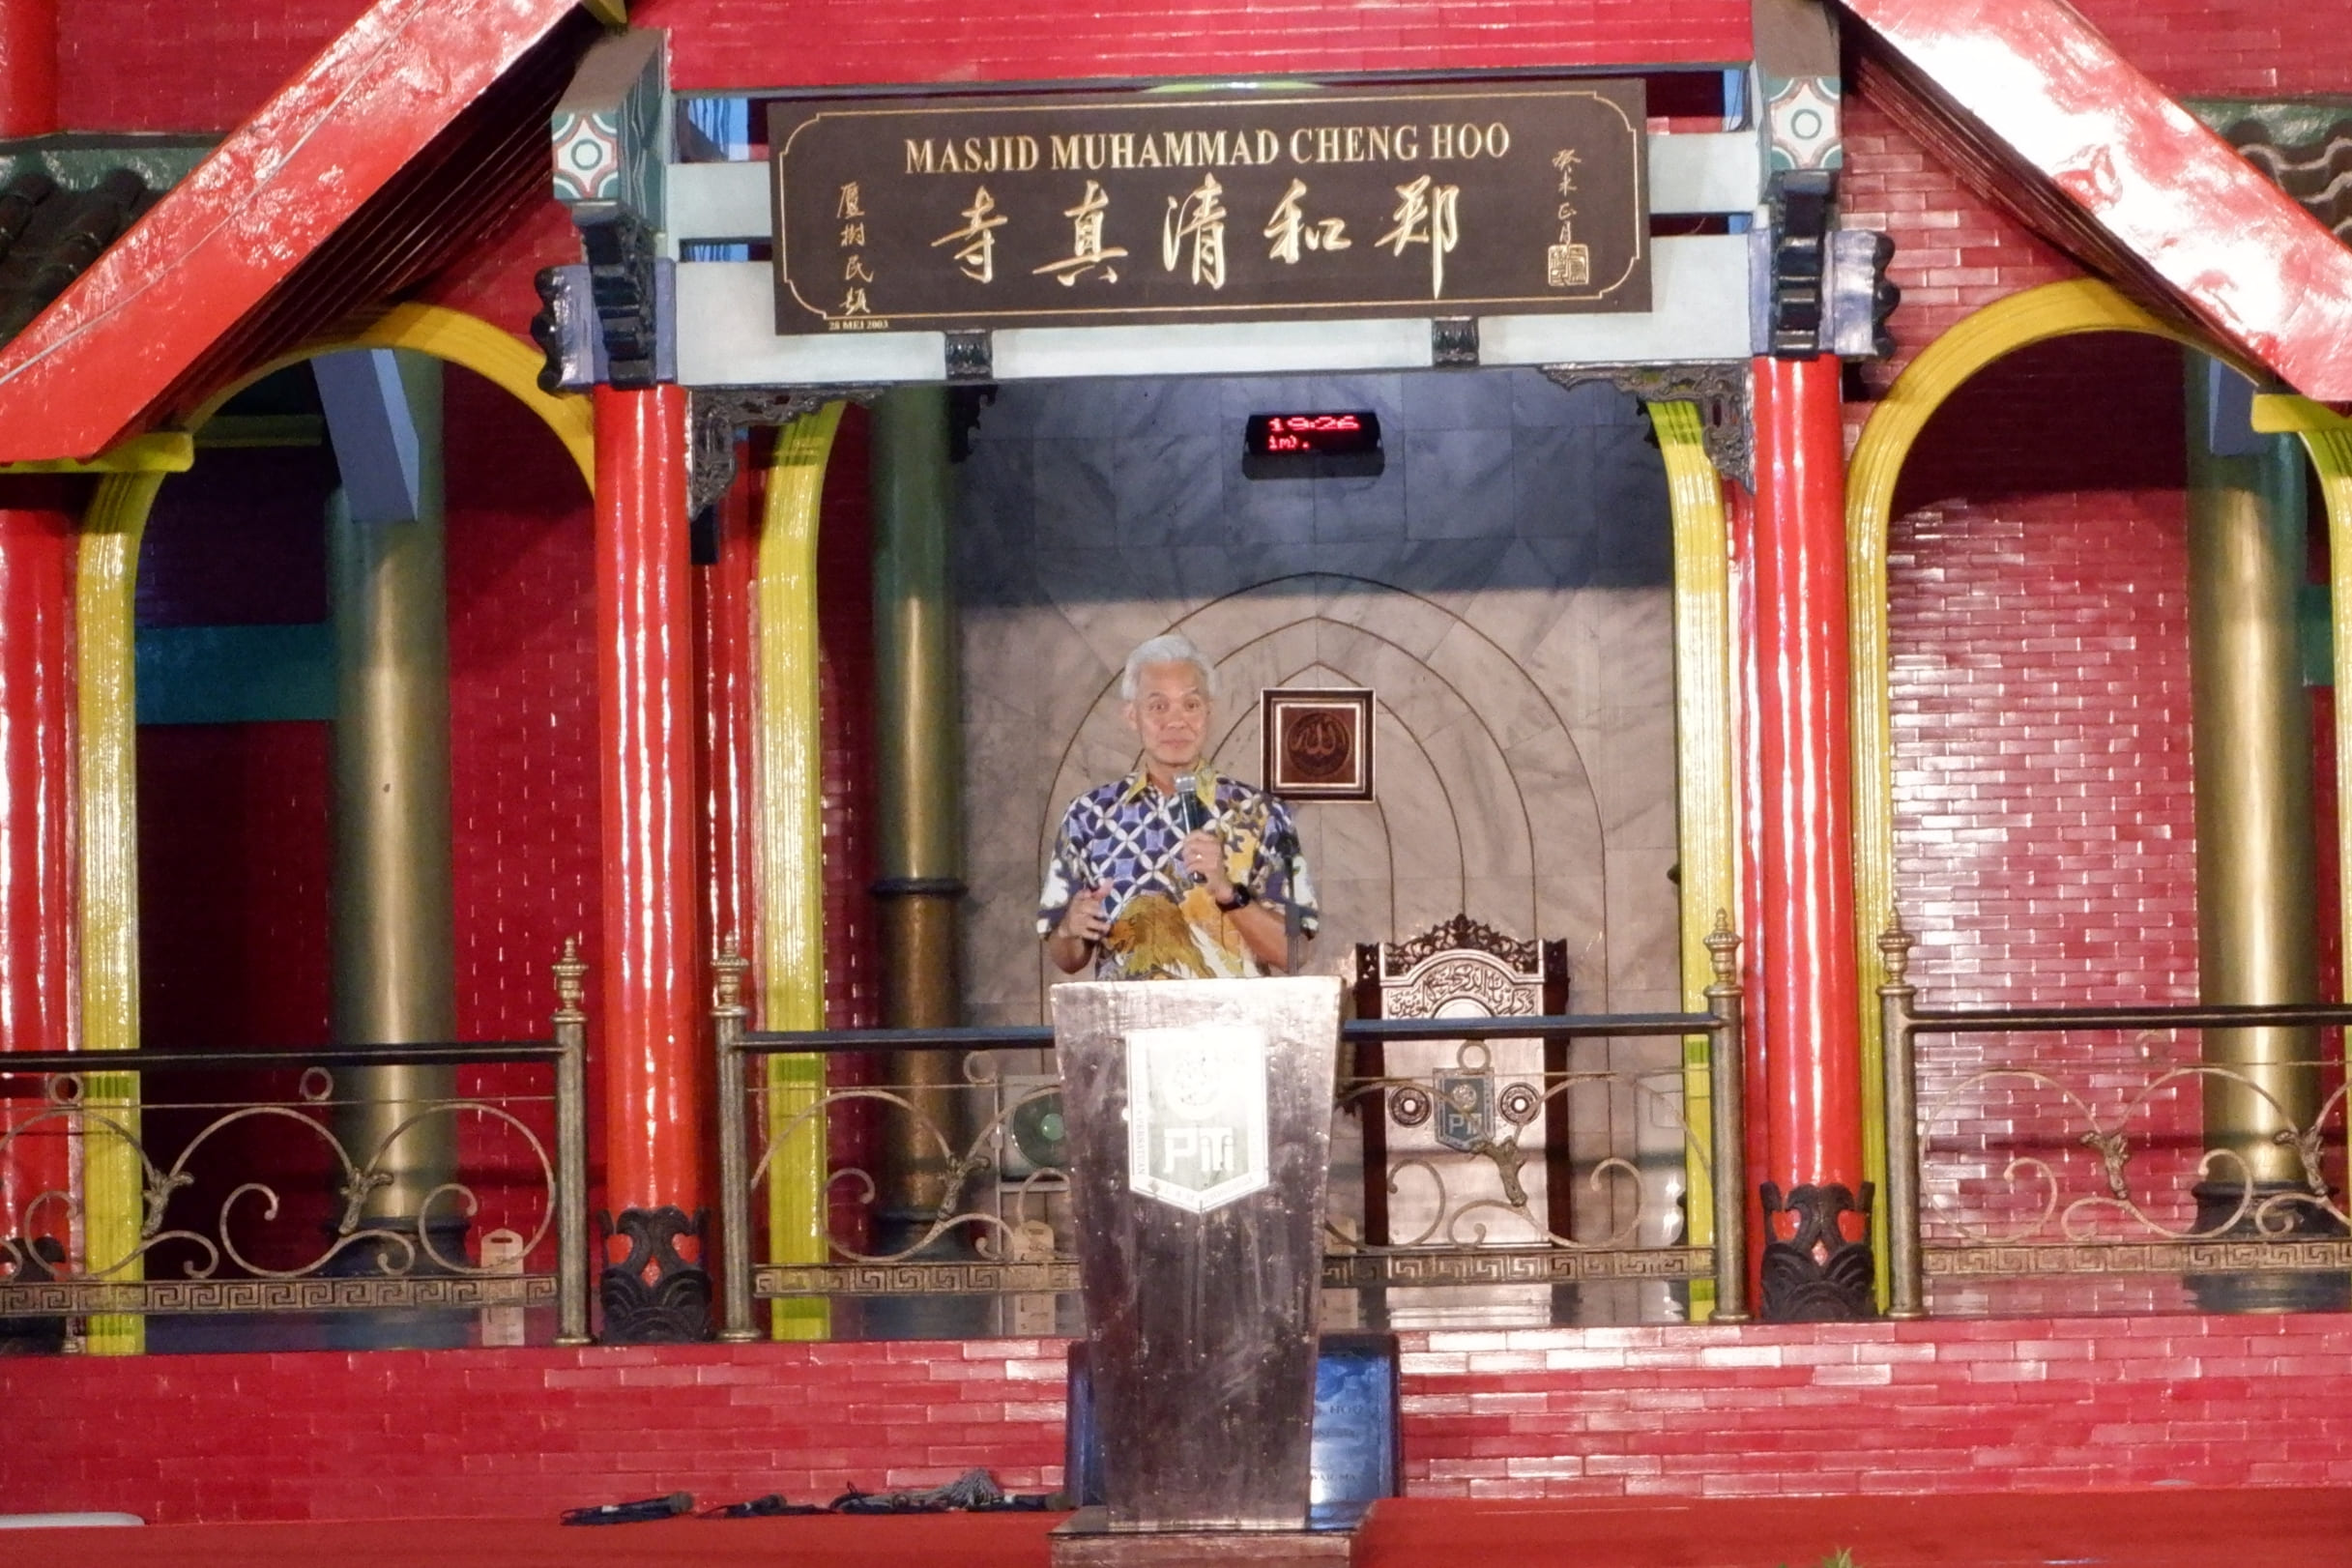 Ganjar Hadiri Ulang Tahun Masjid Muhammad Cheng Hoo Ke-21, Tekankan Poin Penting Mengenai Kerukunan